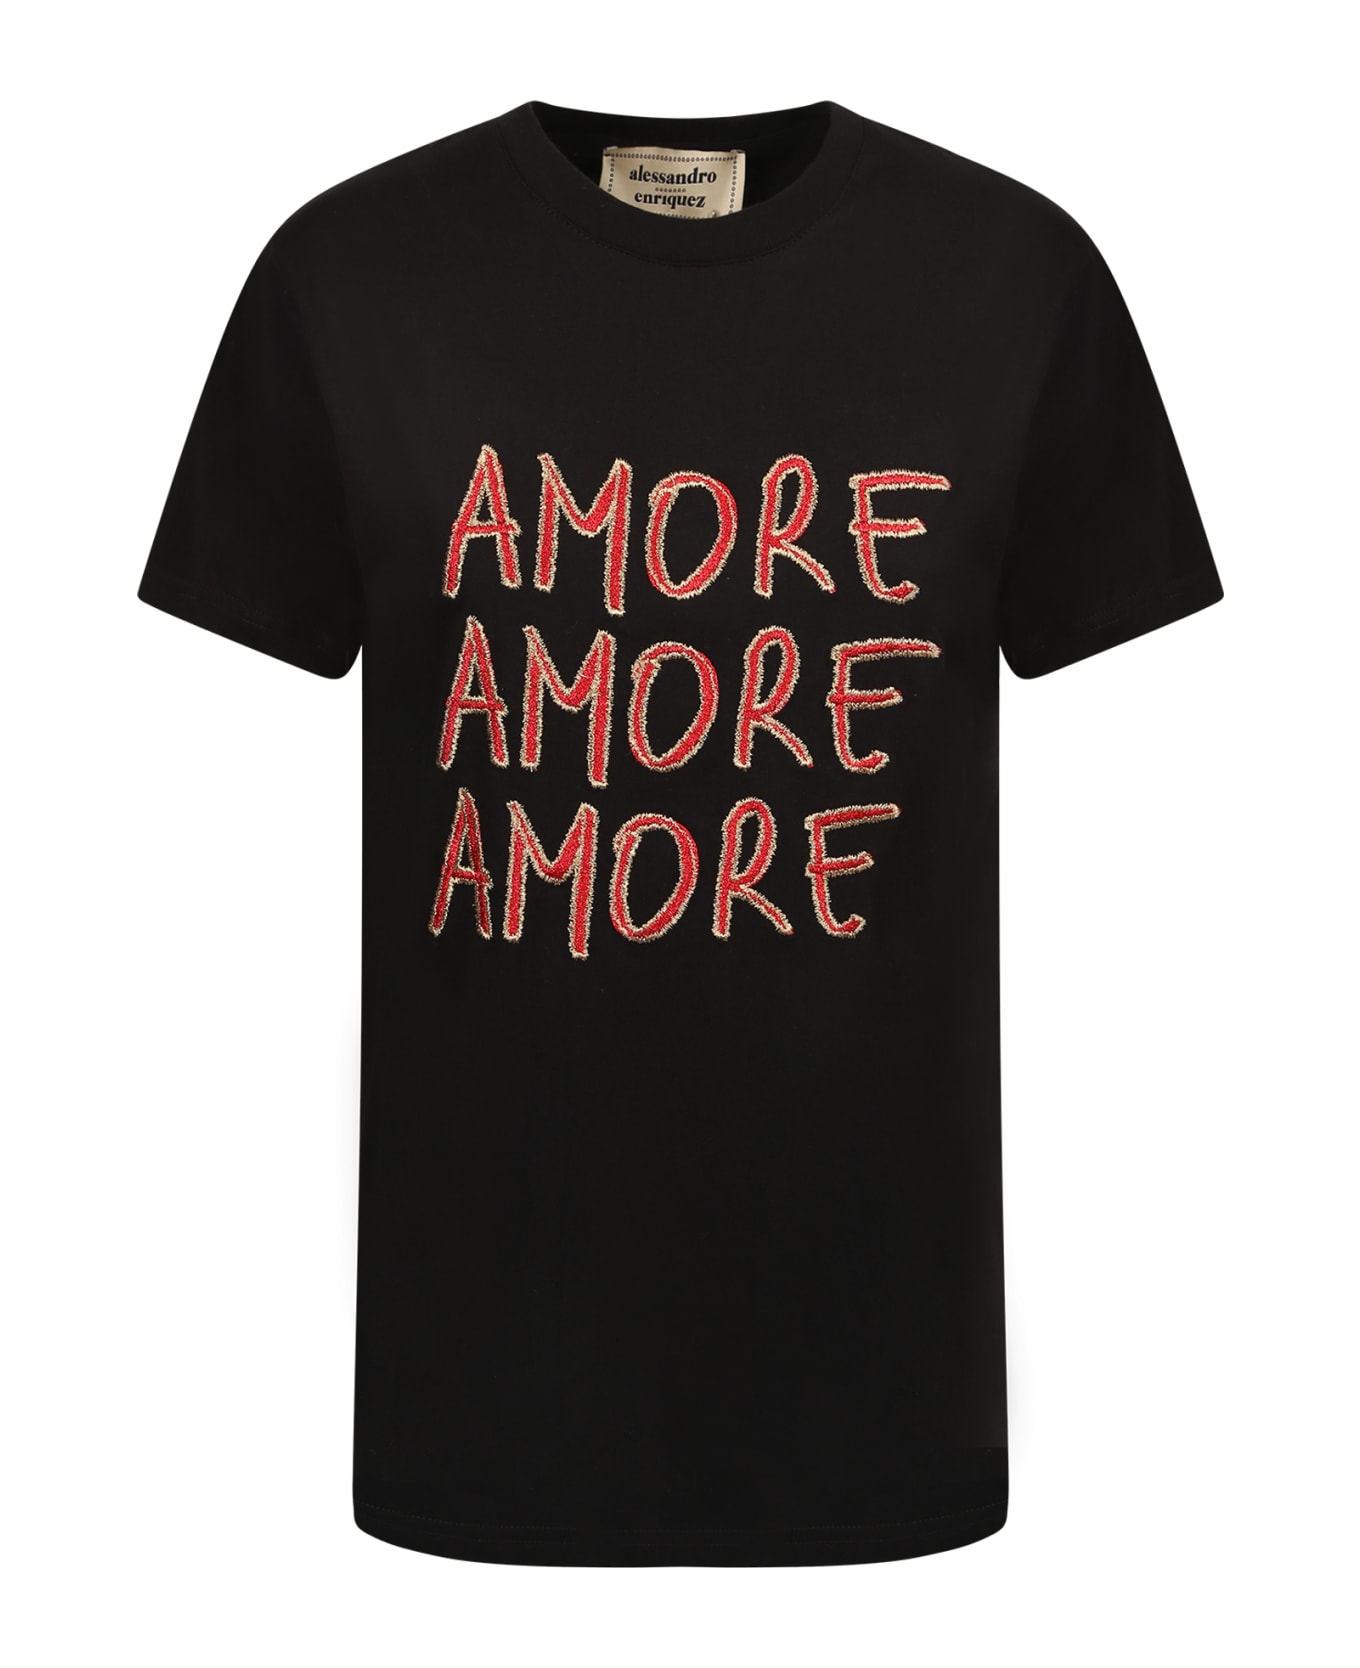 Alessandro Enriquez Cotton T-shirt - Black